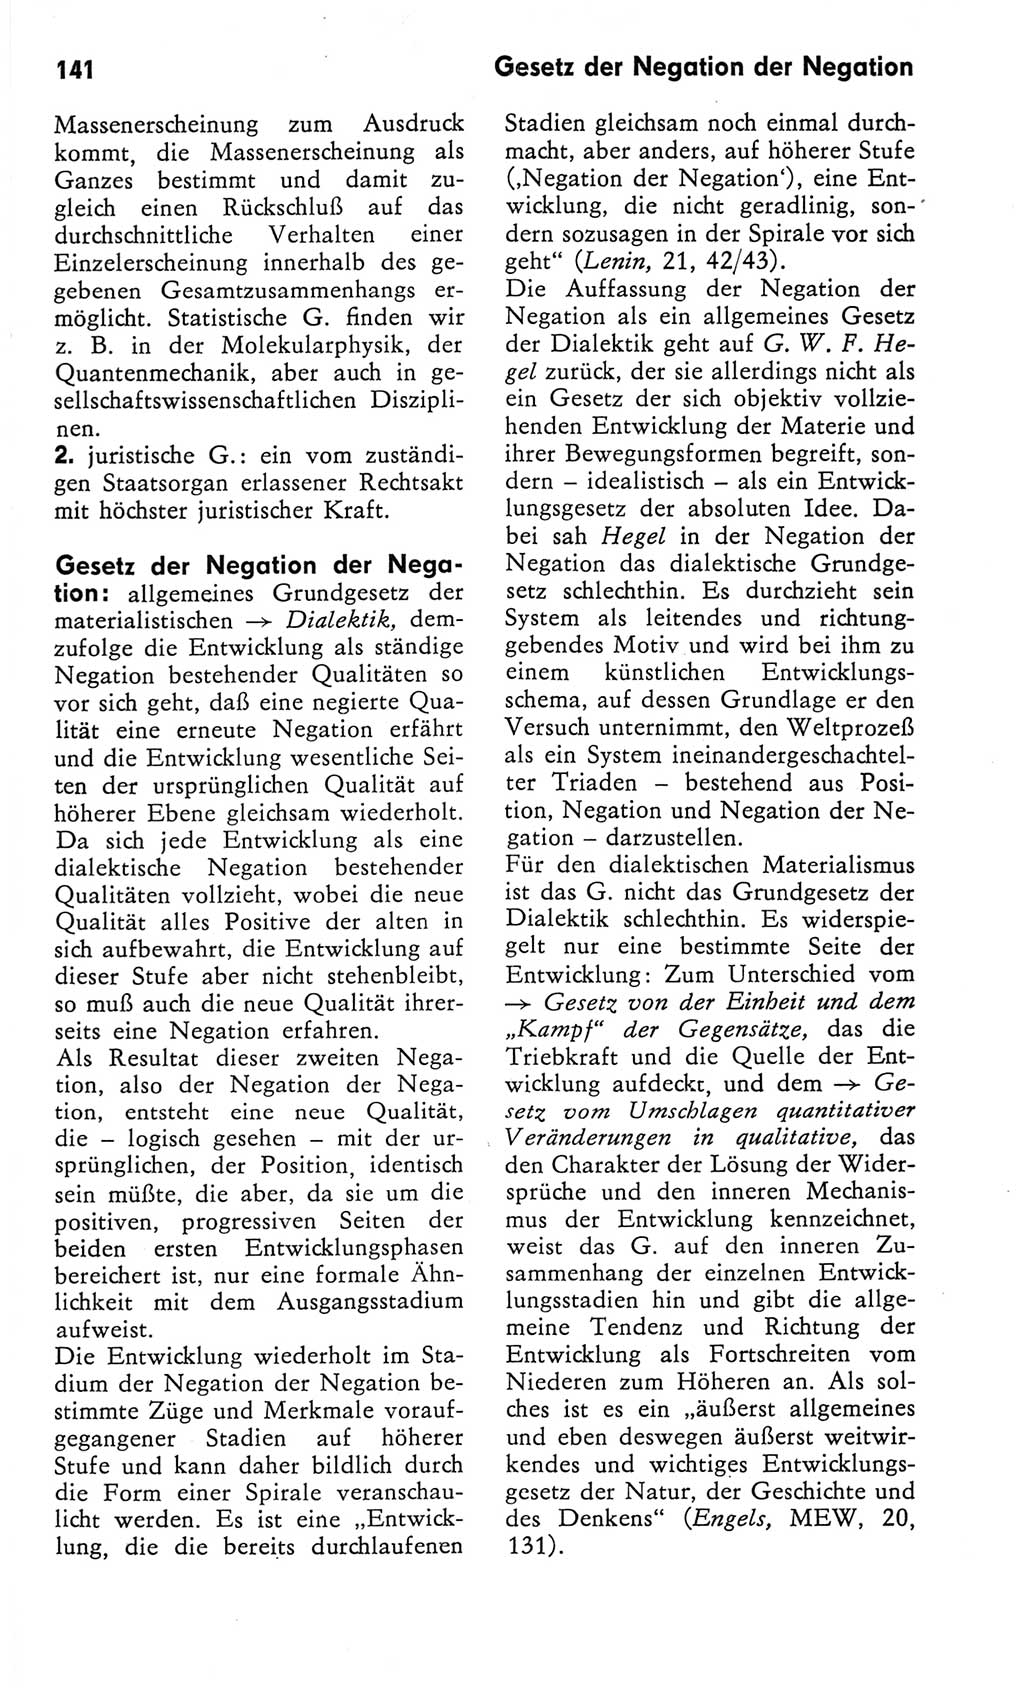 Kleines Wörterbuch der marxistisch-leninistischen Philosophie [Deutsche Demokratische Republik (DDR)] 1982, Seite 141 (Kl. Wb. ML Phil. DDR 1982, S. 141)